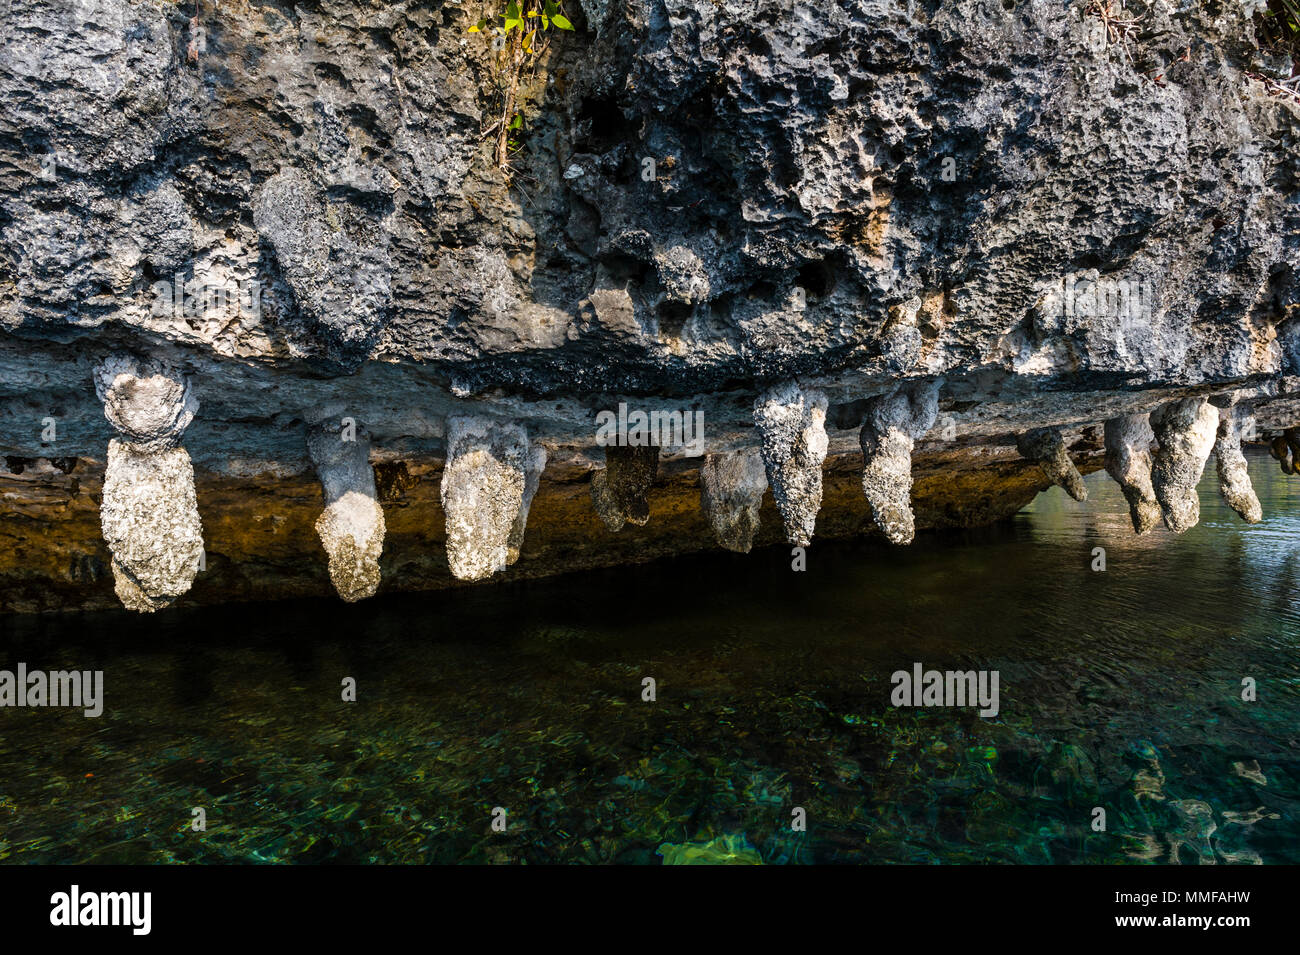 Kalzium und mineralische Ablagerungen hängen von einem Kalkstein. Stockfoto